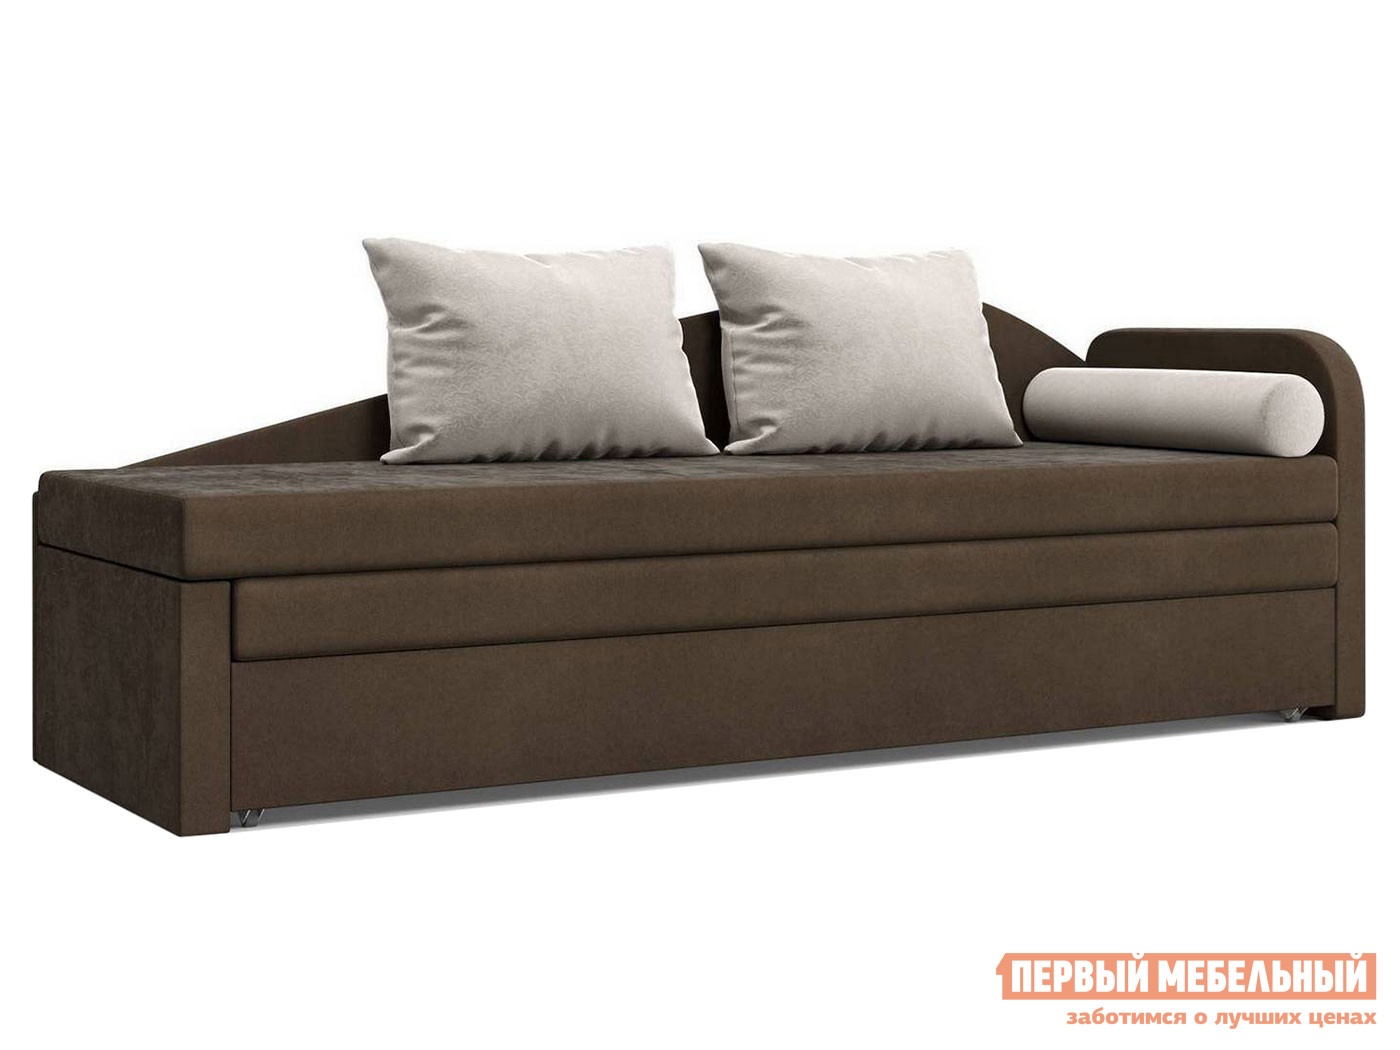 Прямой диван верди коричневый, велюр, правый preview 1